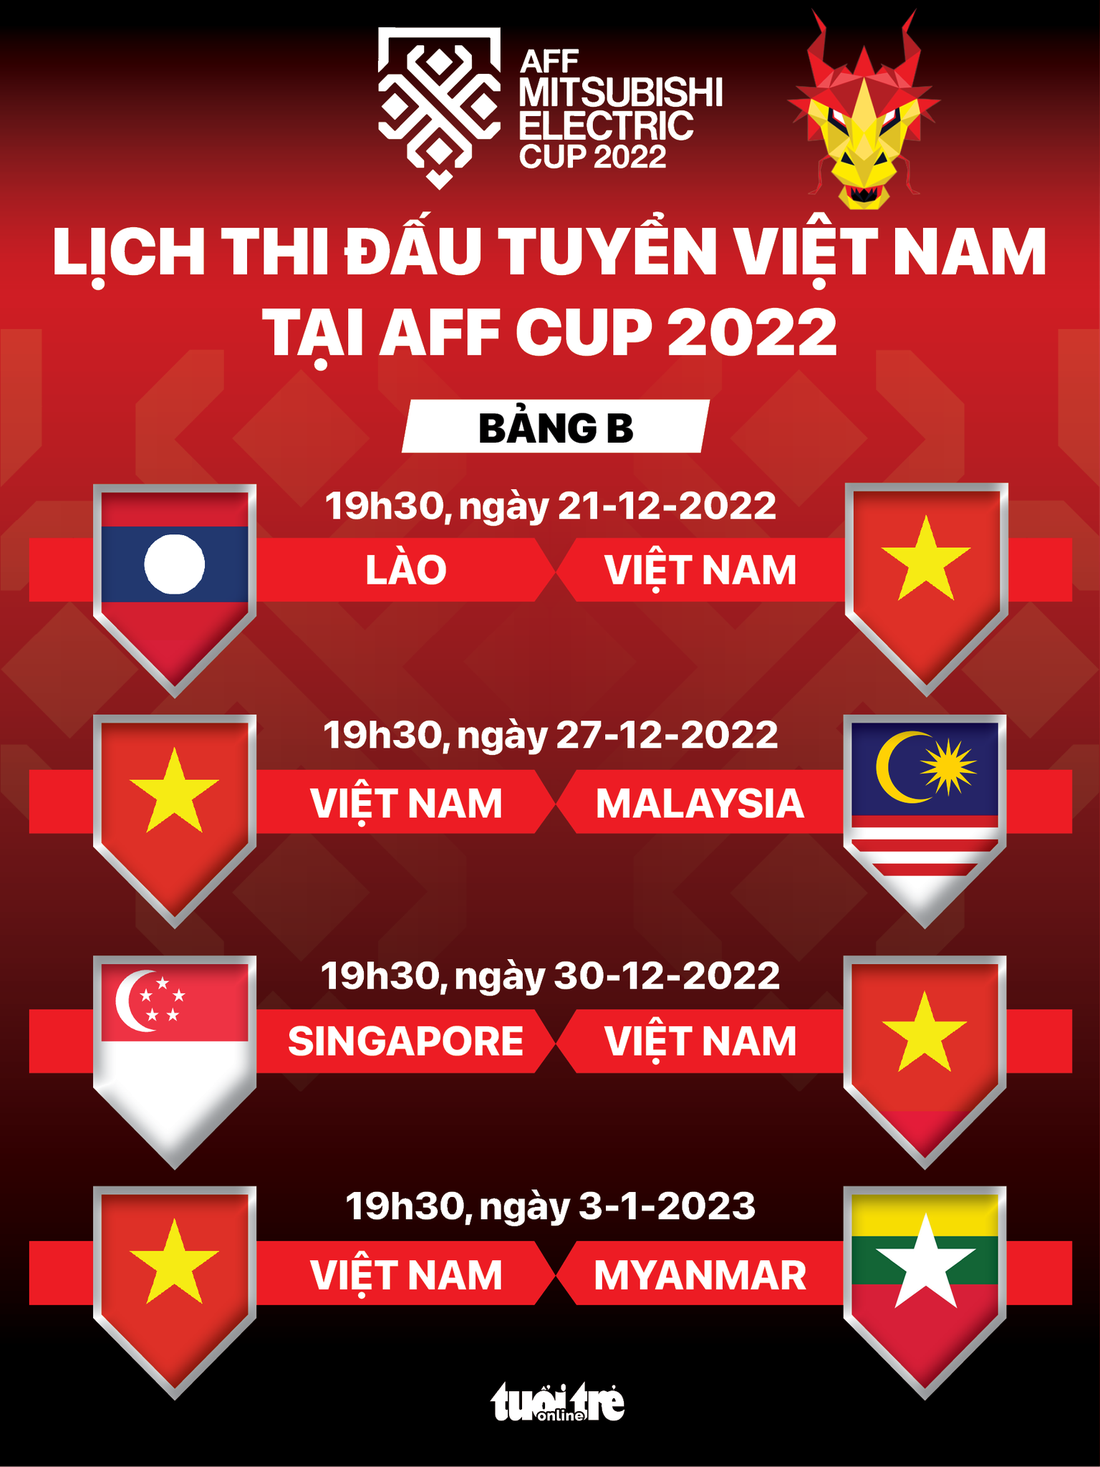 Lịch thi đấu của tuyển Việt Nam ở AFF Cup 2022 - Ảnh 1.